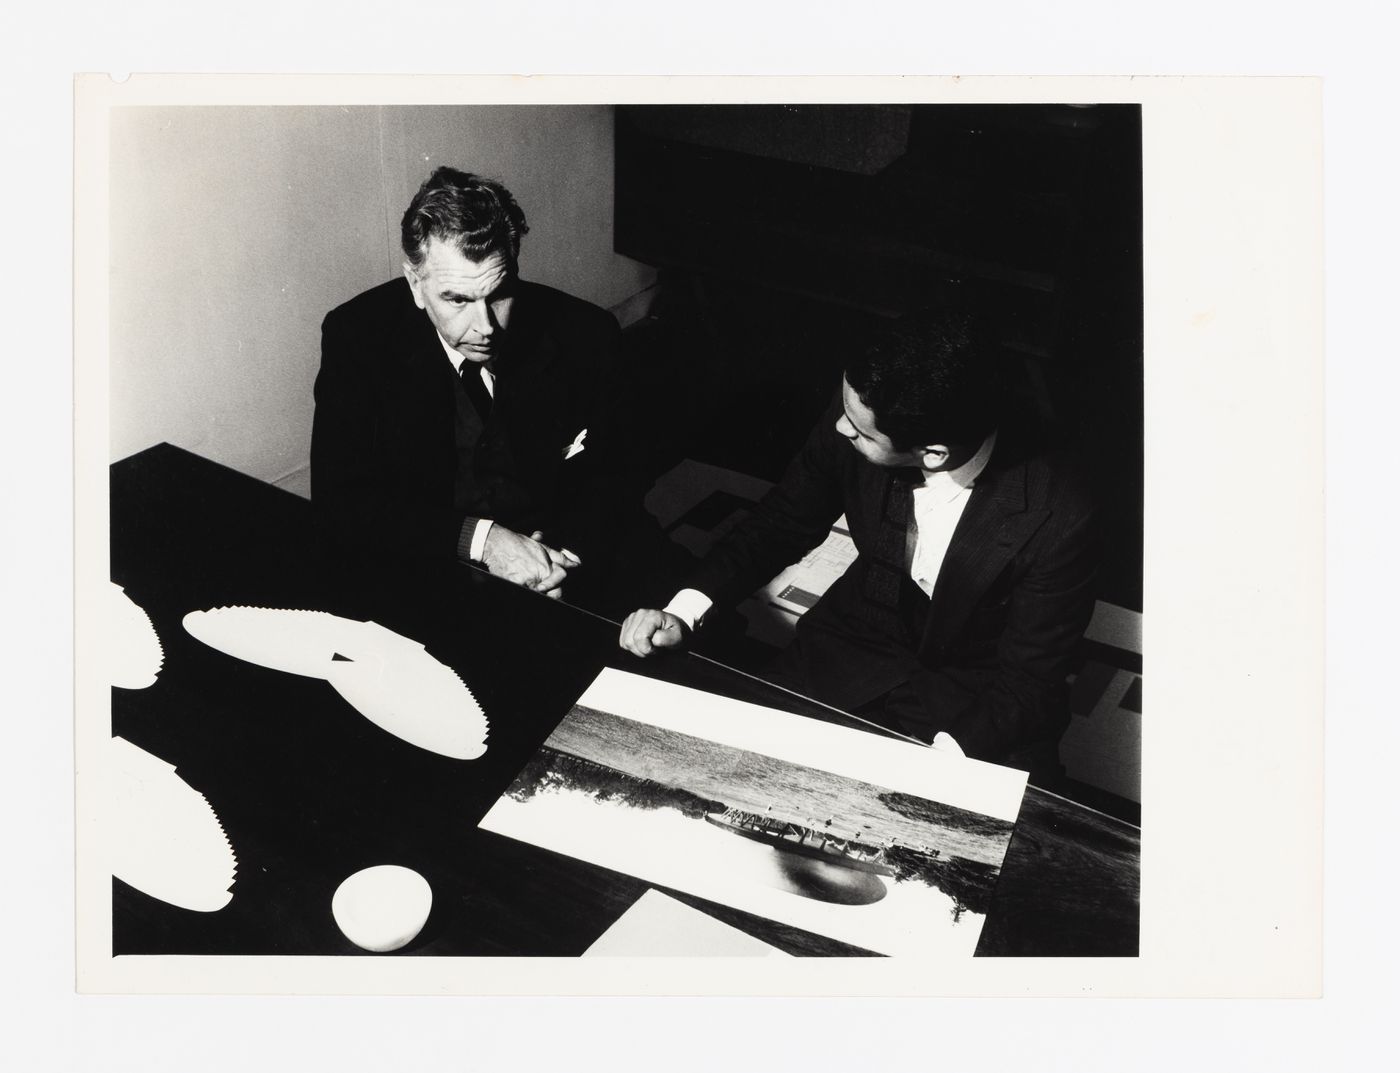 Photograph of Amancio Wiliams and J. Mauricio looking at drawing of Sala para el espectàculo plàstico y el sonido en el espacio